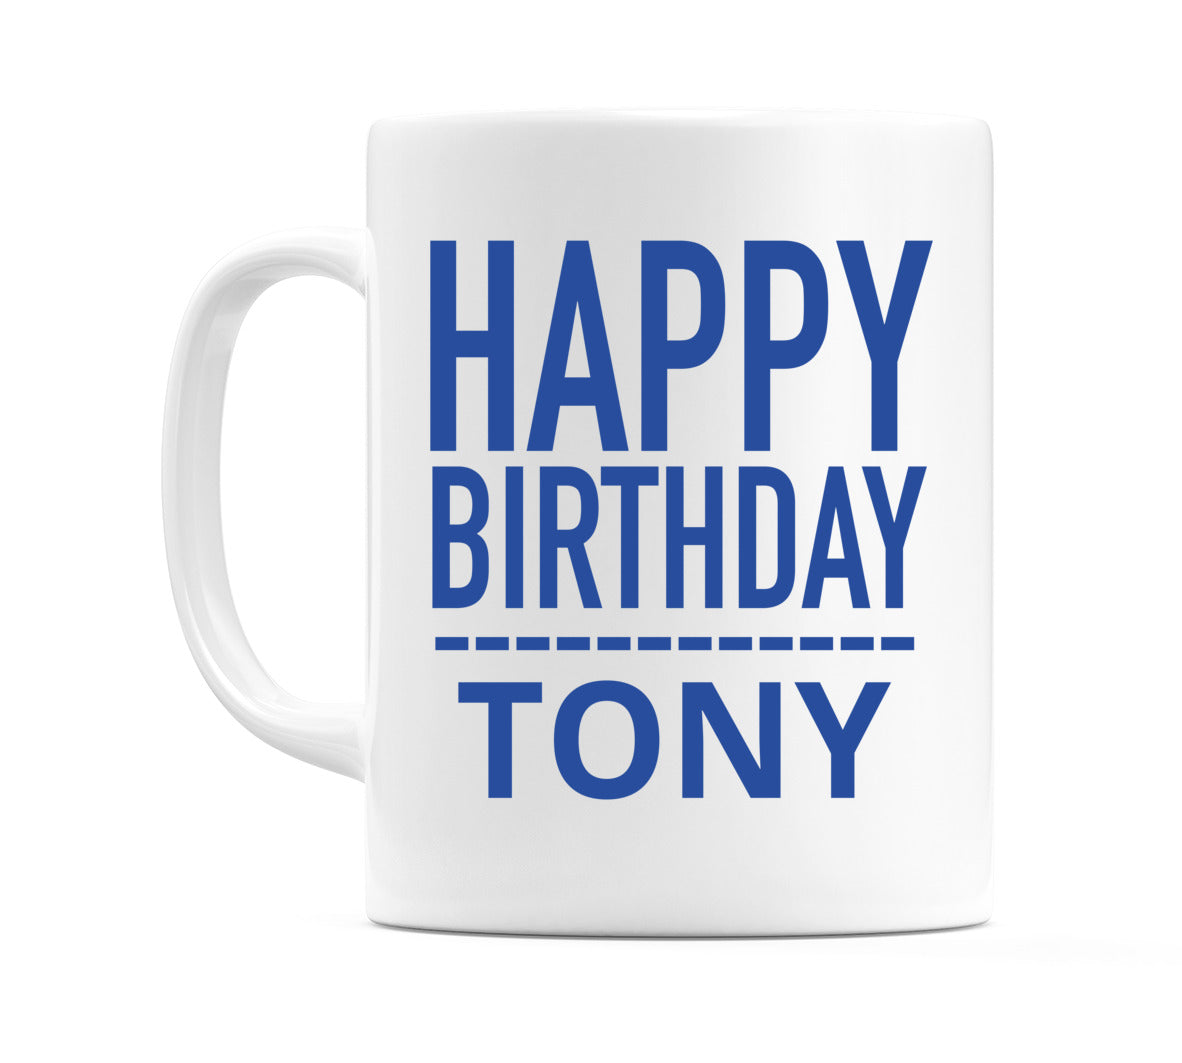 Happy Birthday Tony (Plain Blue) Mug